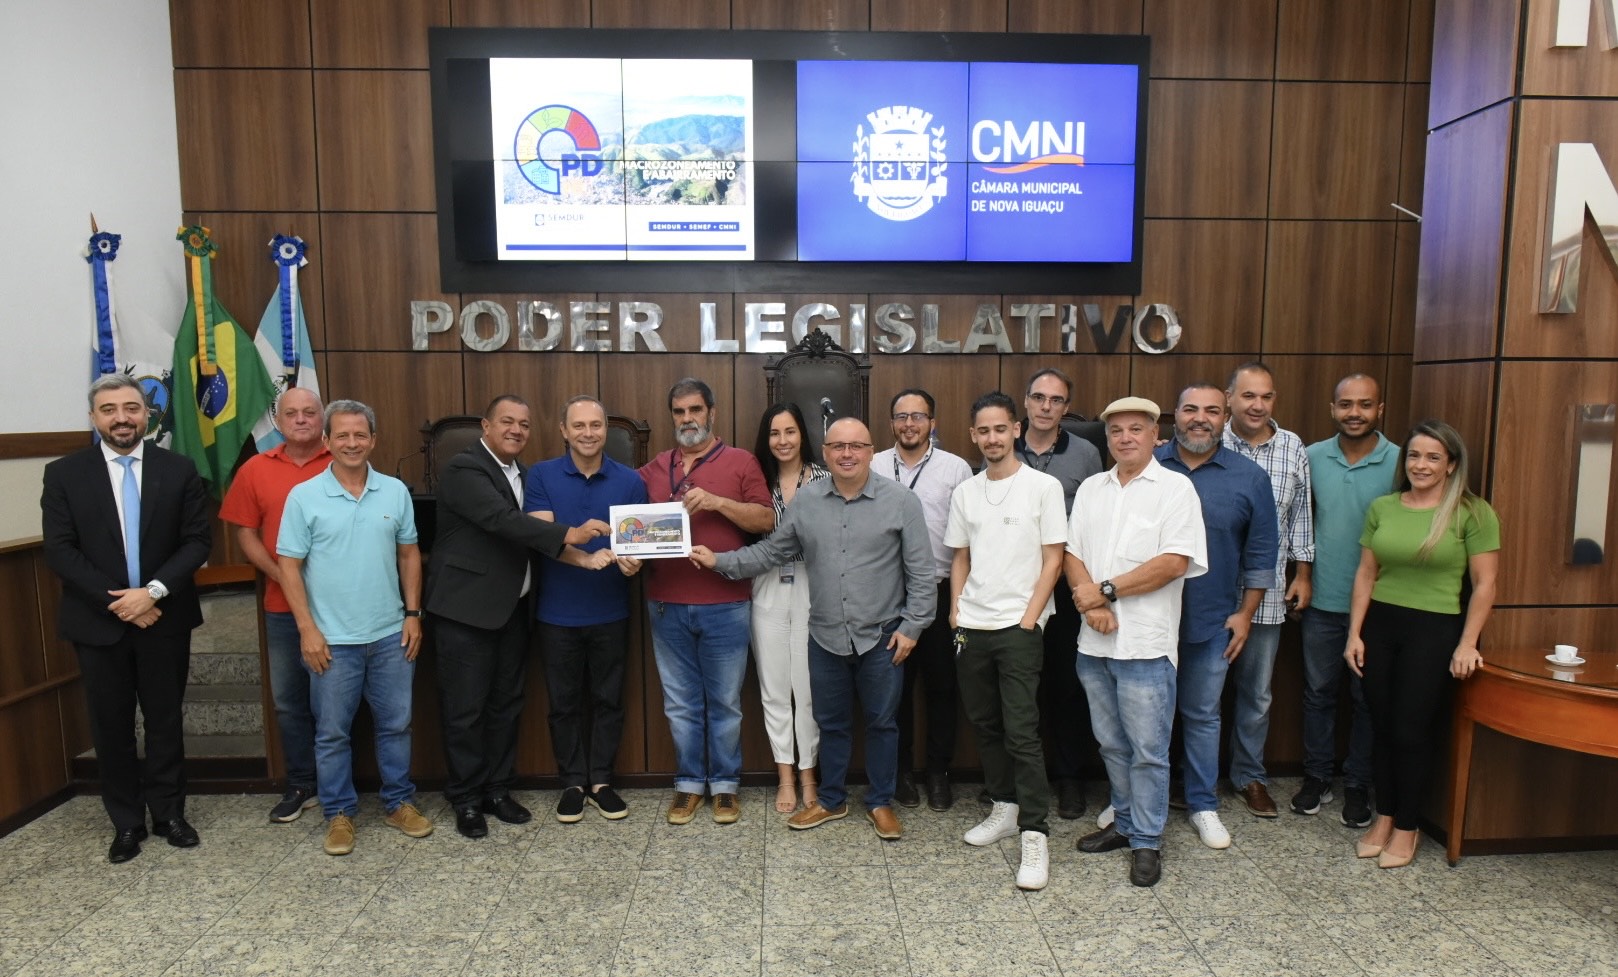 Câmara de Vereadores e Prefeitura de Nova Iguaçu começam a discutir o desenvolvimento urbano do município